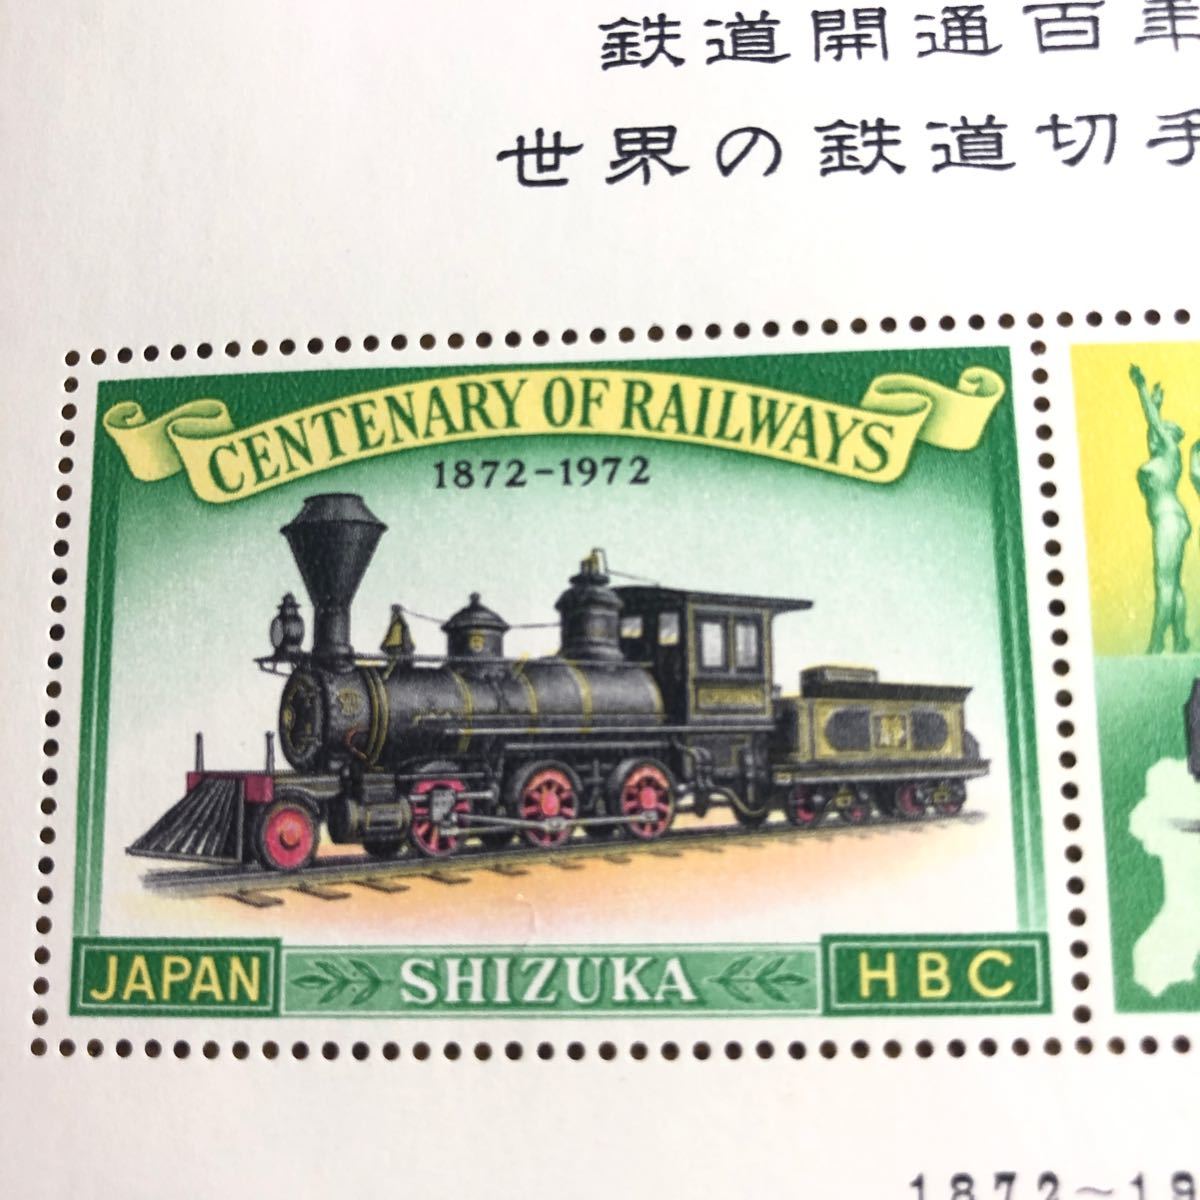 昭和47年 鉄道開通百年記念シール 切手型 義経と大勝号、弁慶と開拓使客車SL等